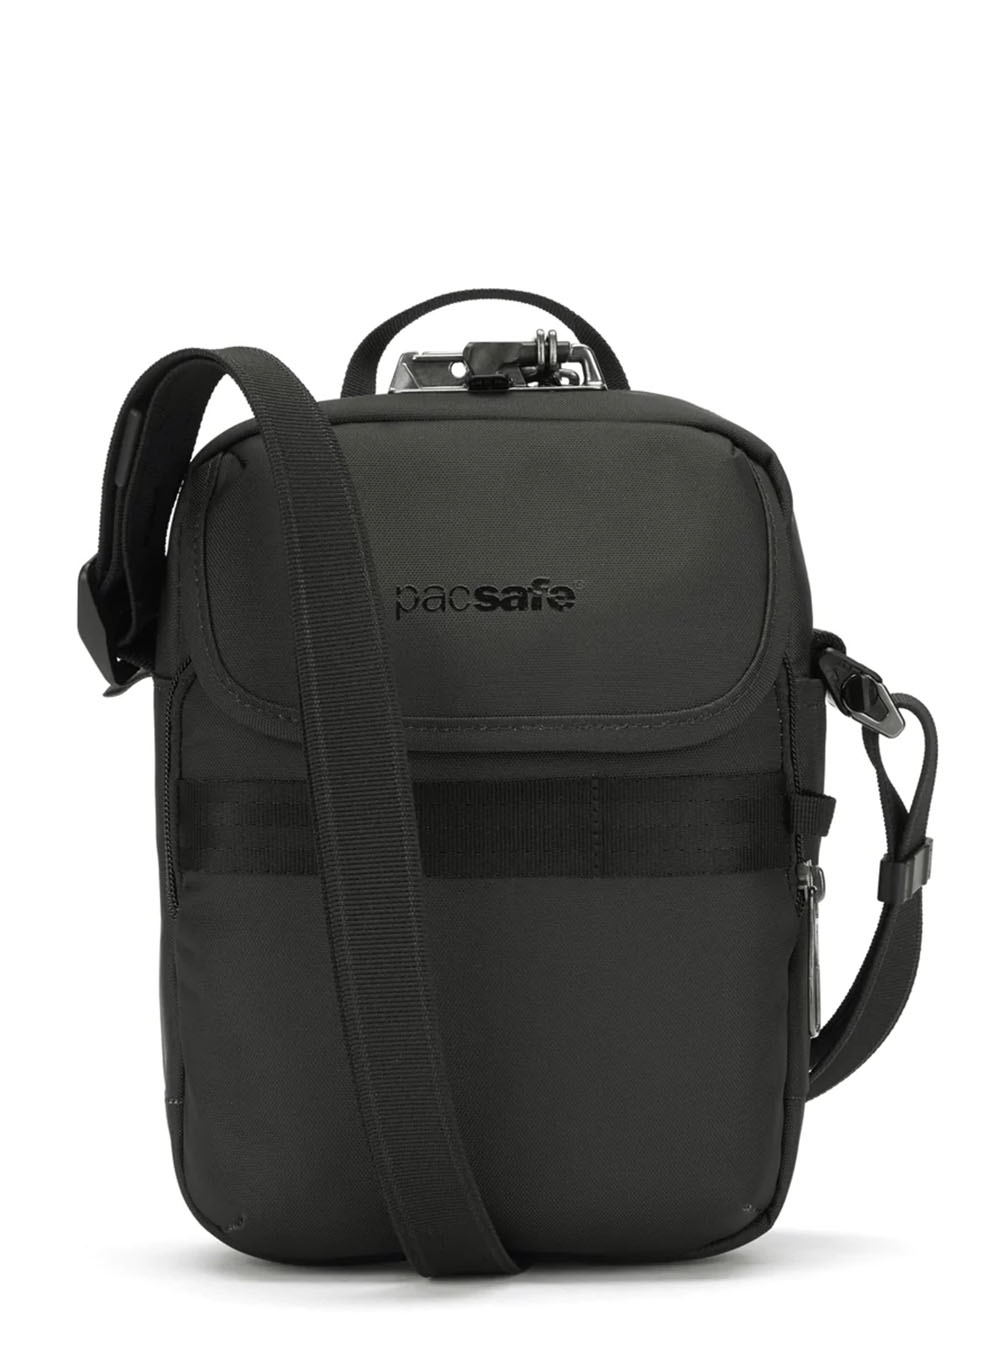 Antykradzieżowa torba na ramię Pacsafe Metrosafe X Compact - black